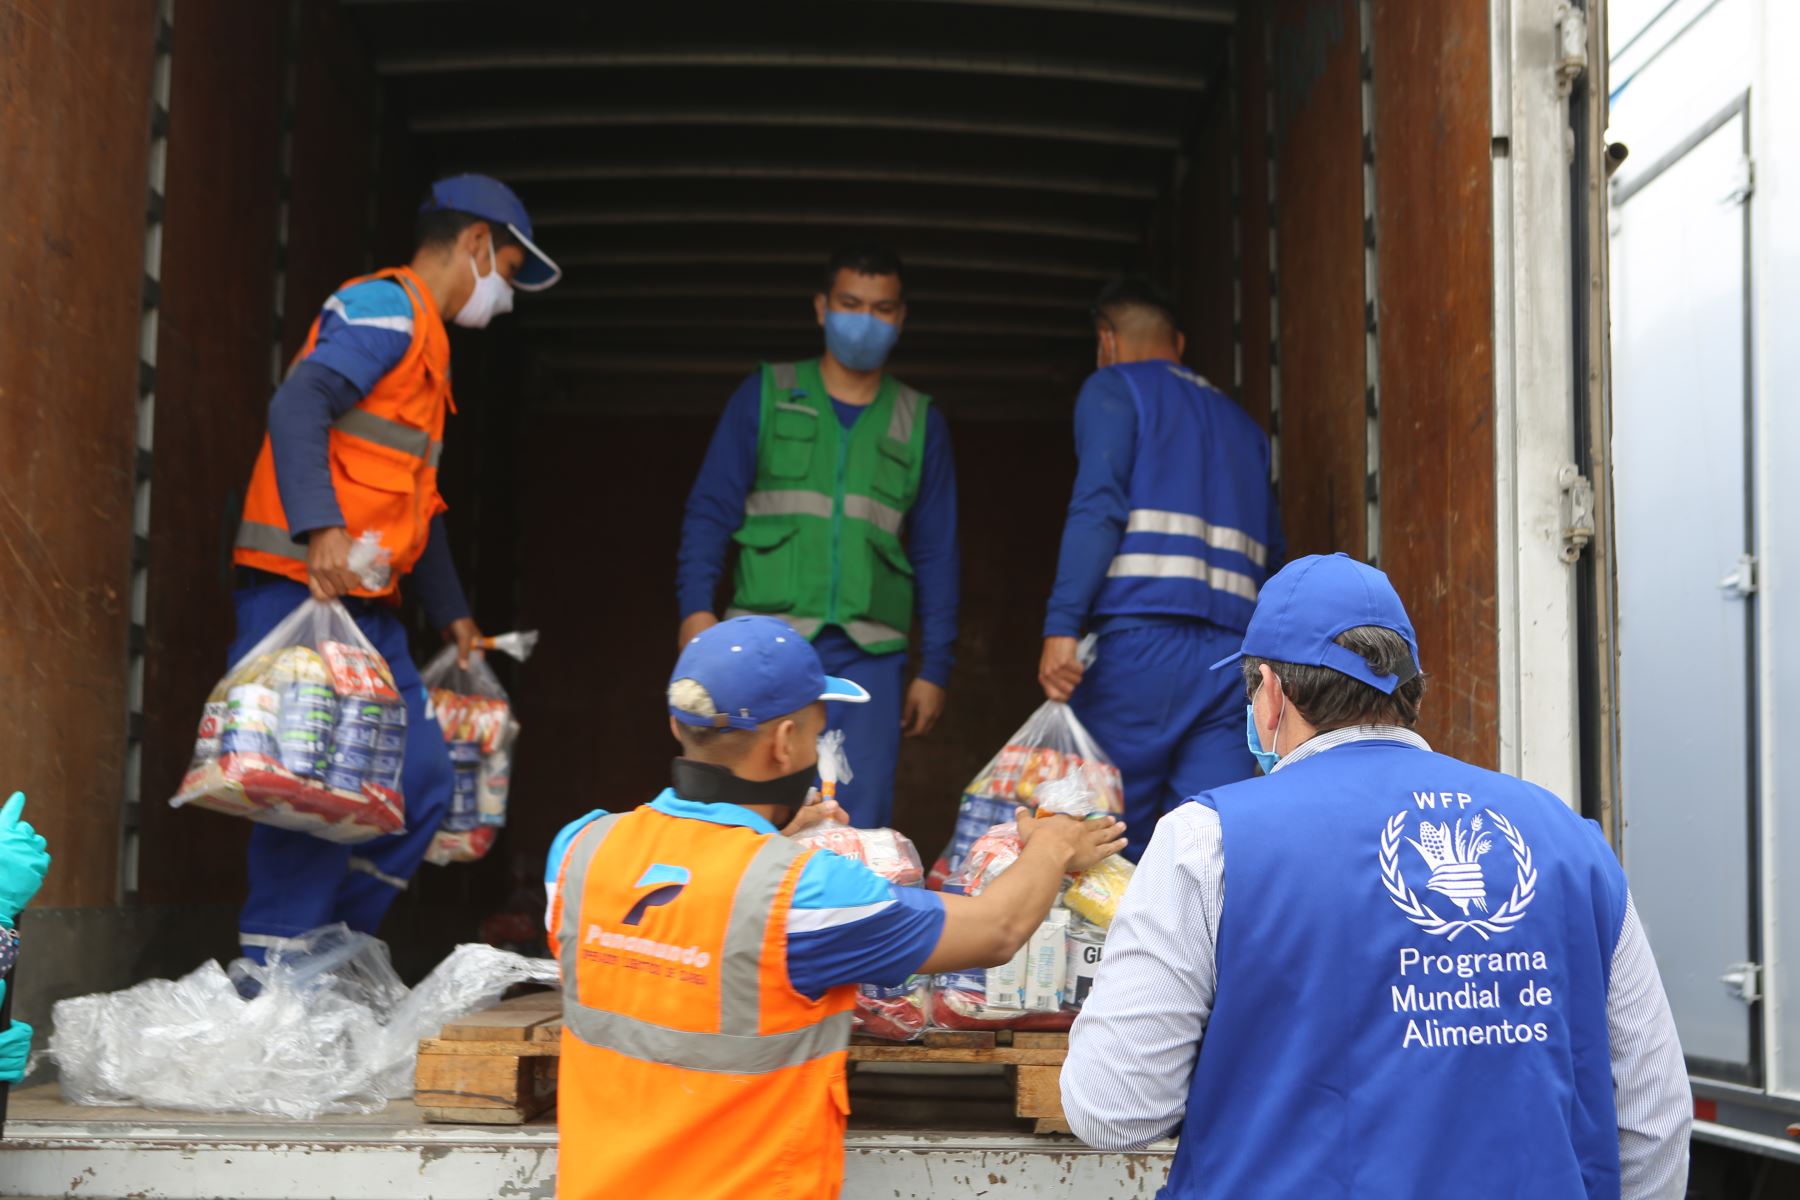 El WFP y sus aliados estratégicos generan una cadena de donaciones y recuperación sostenida de alimentos para los más necesitados.